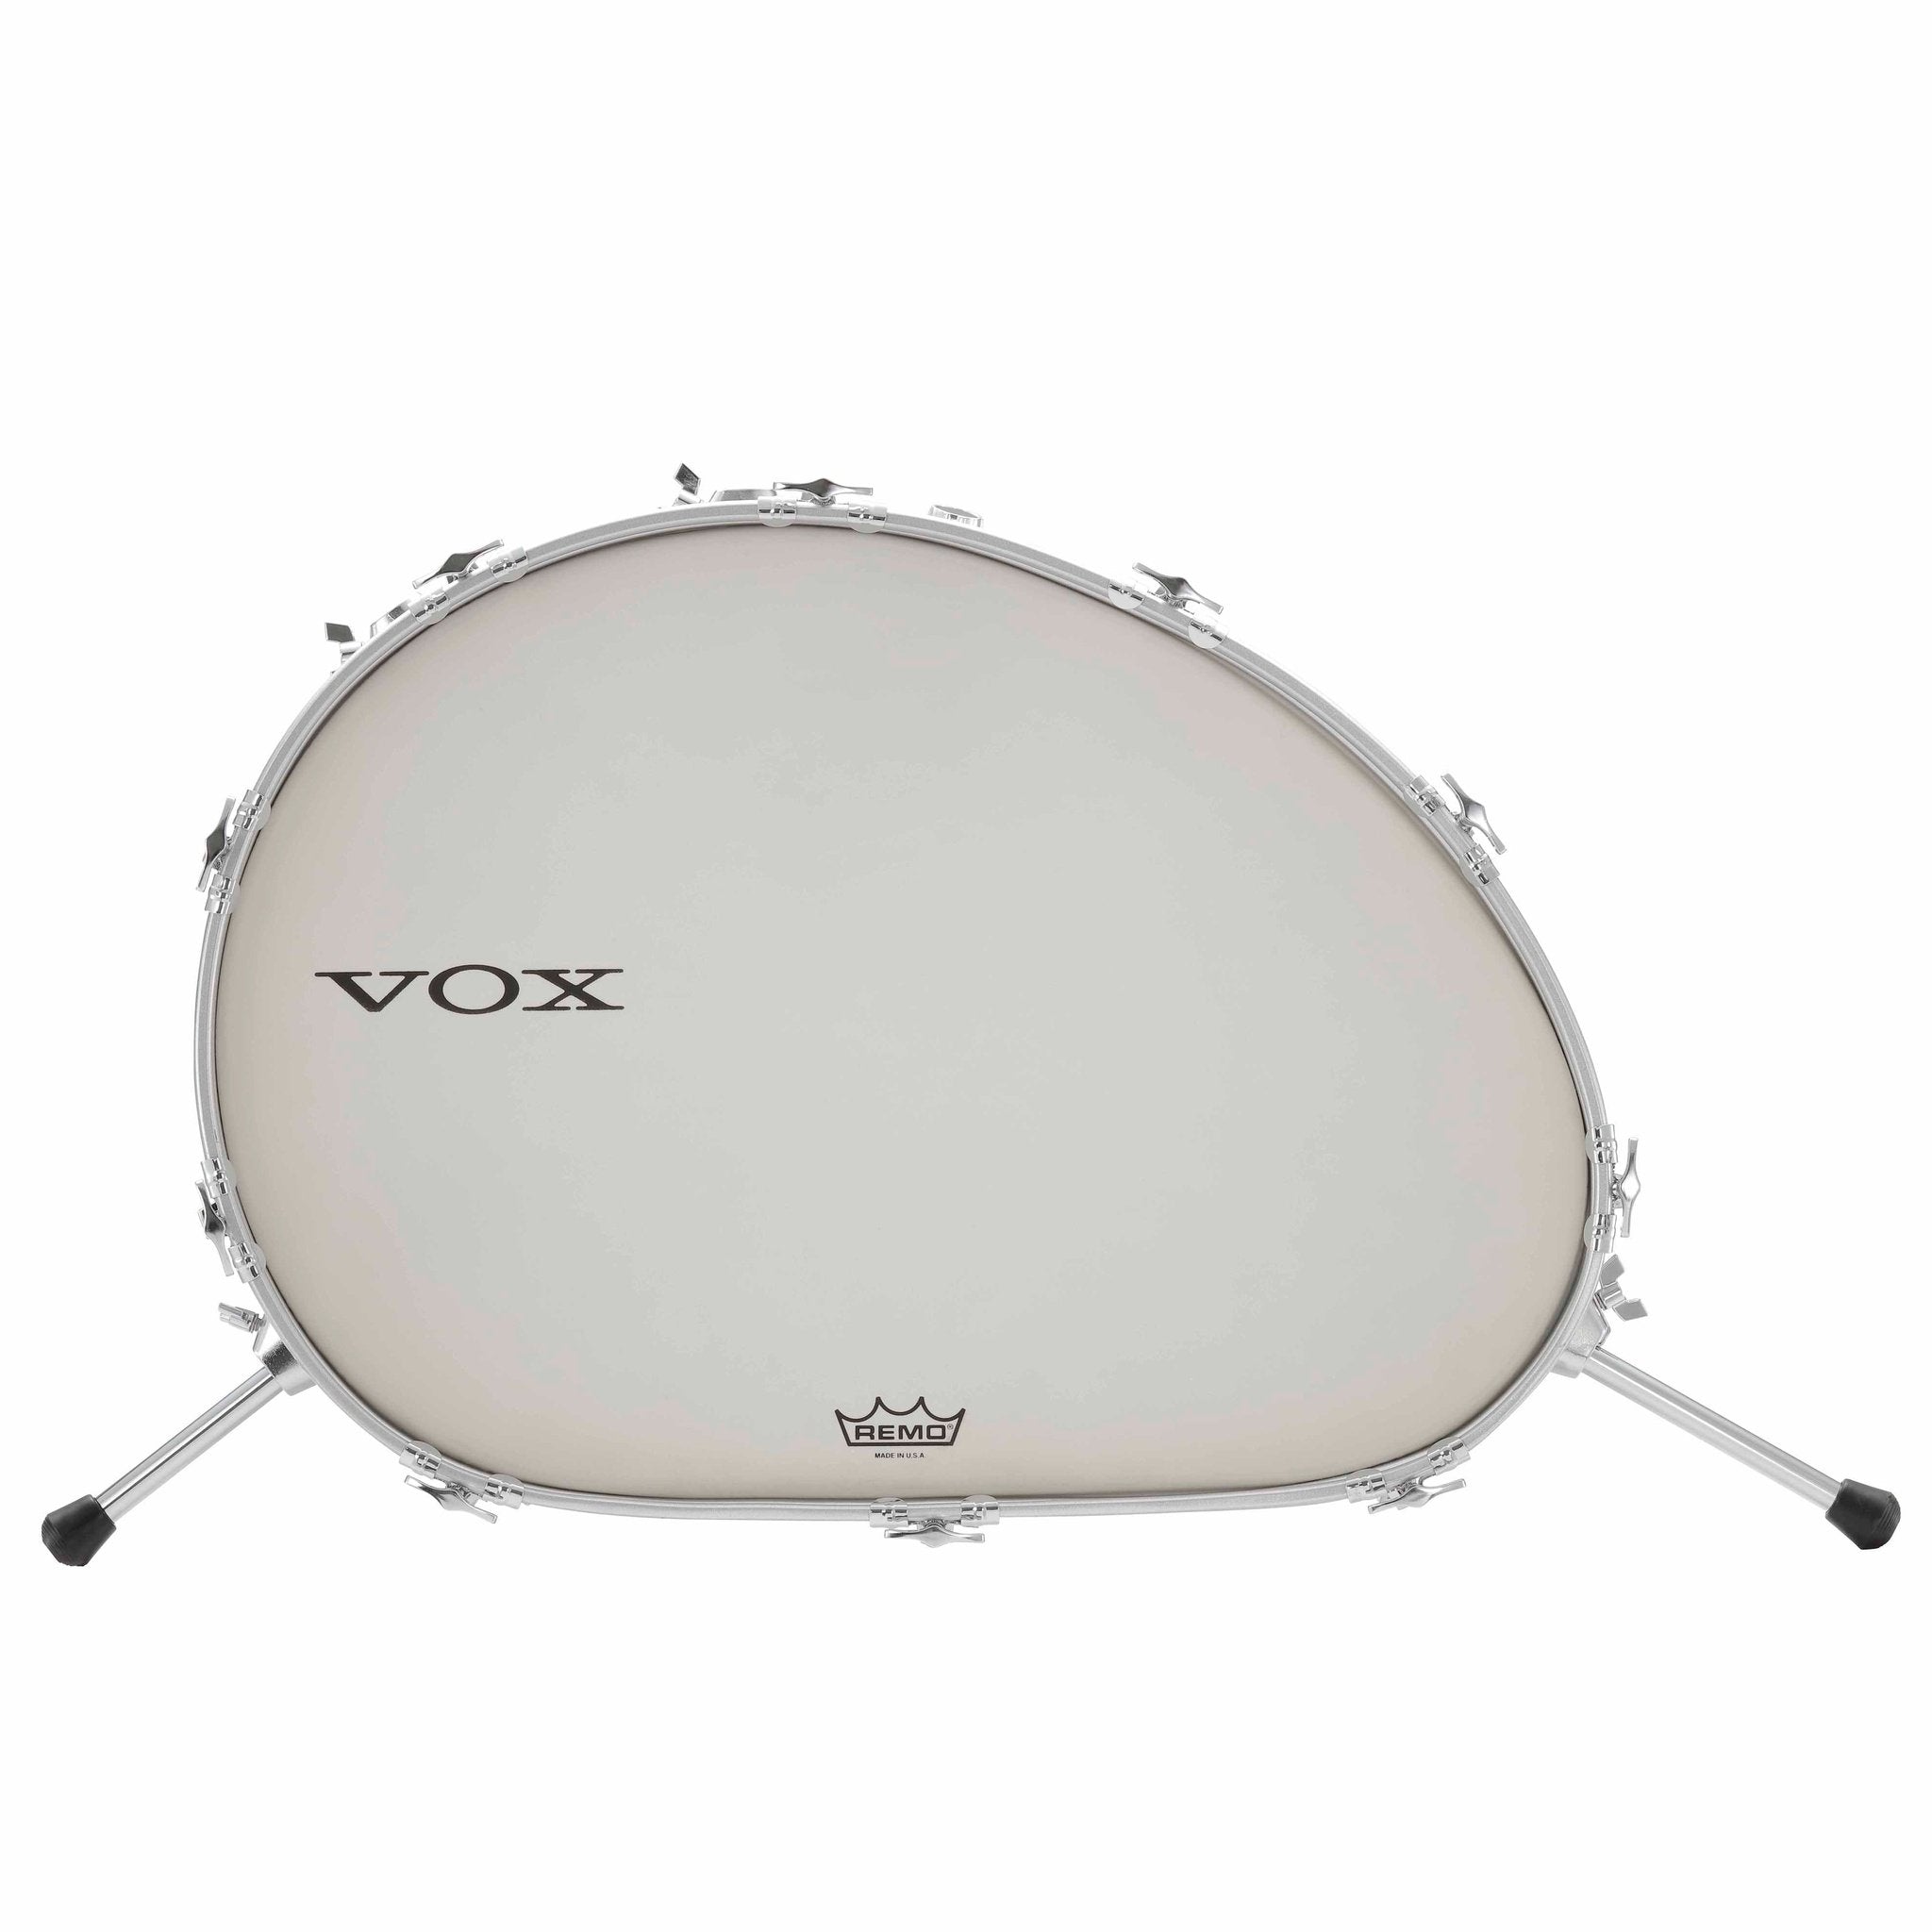 Vox Telstar Drum Kit 8